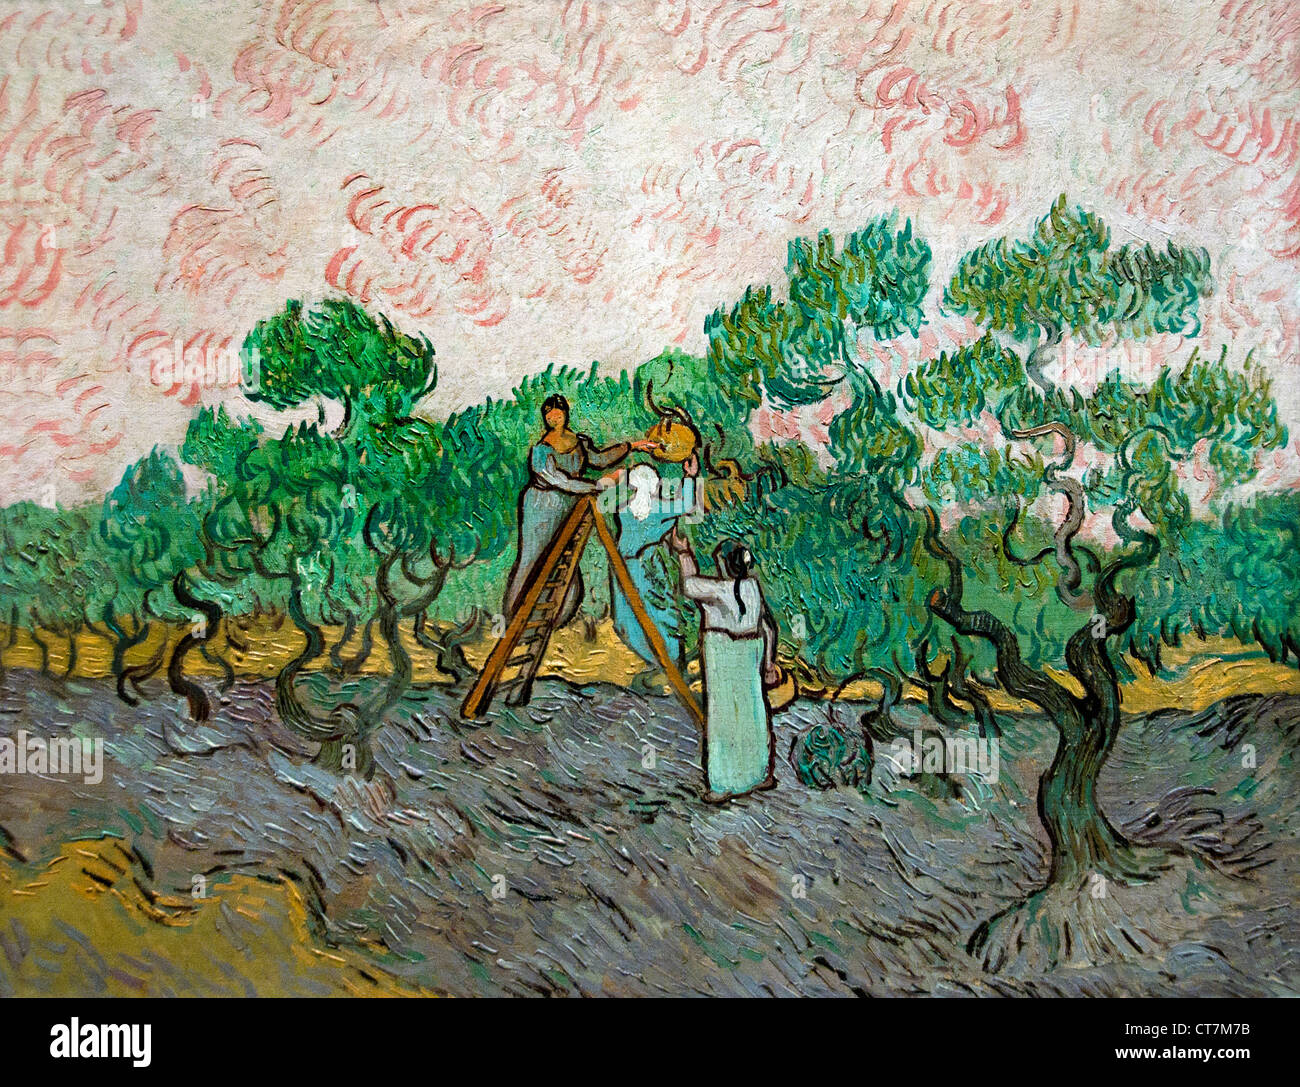 Les femmes cueillette des olives 1889 van Gogh VVincent 1853-1890 Pays-Bas Néerlandais Banque D'Images